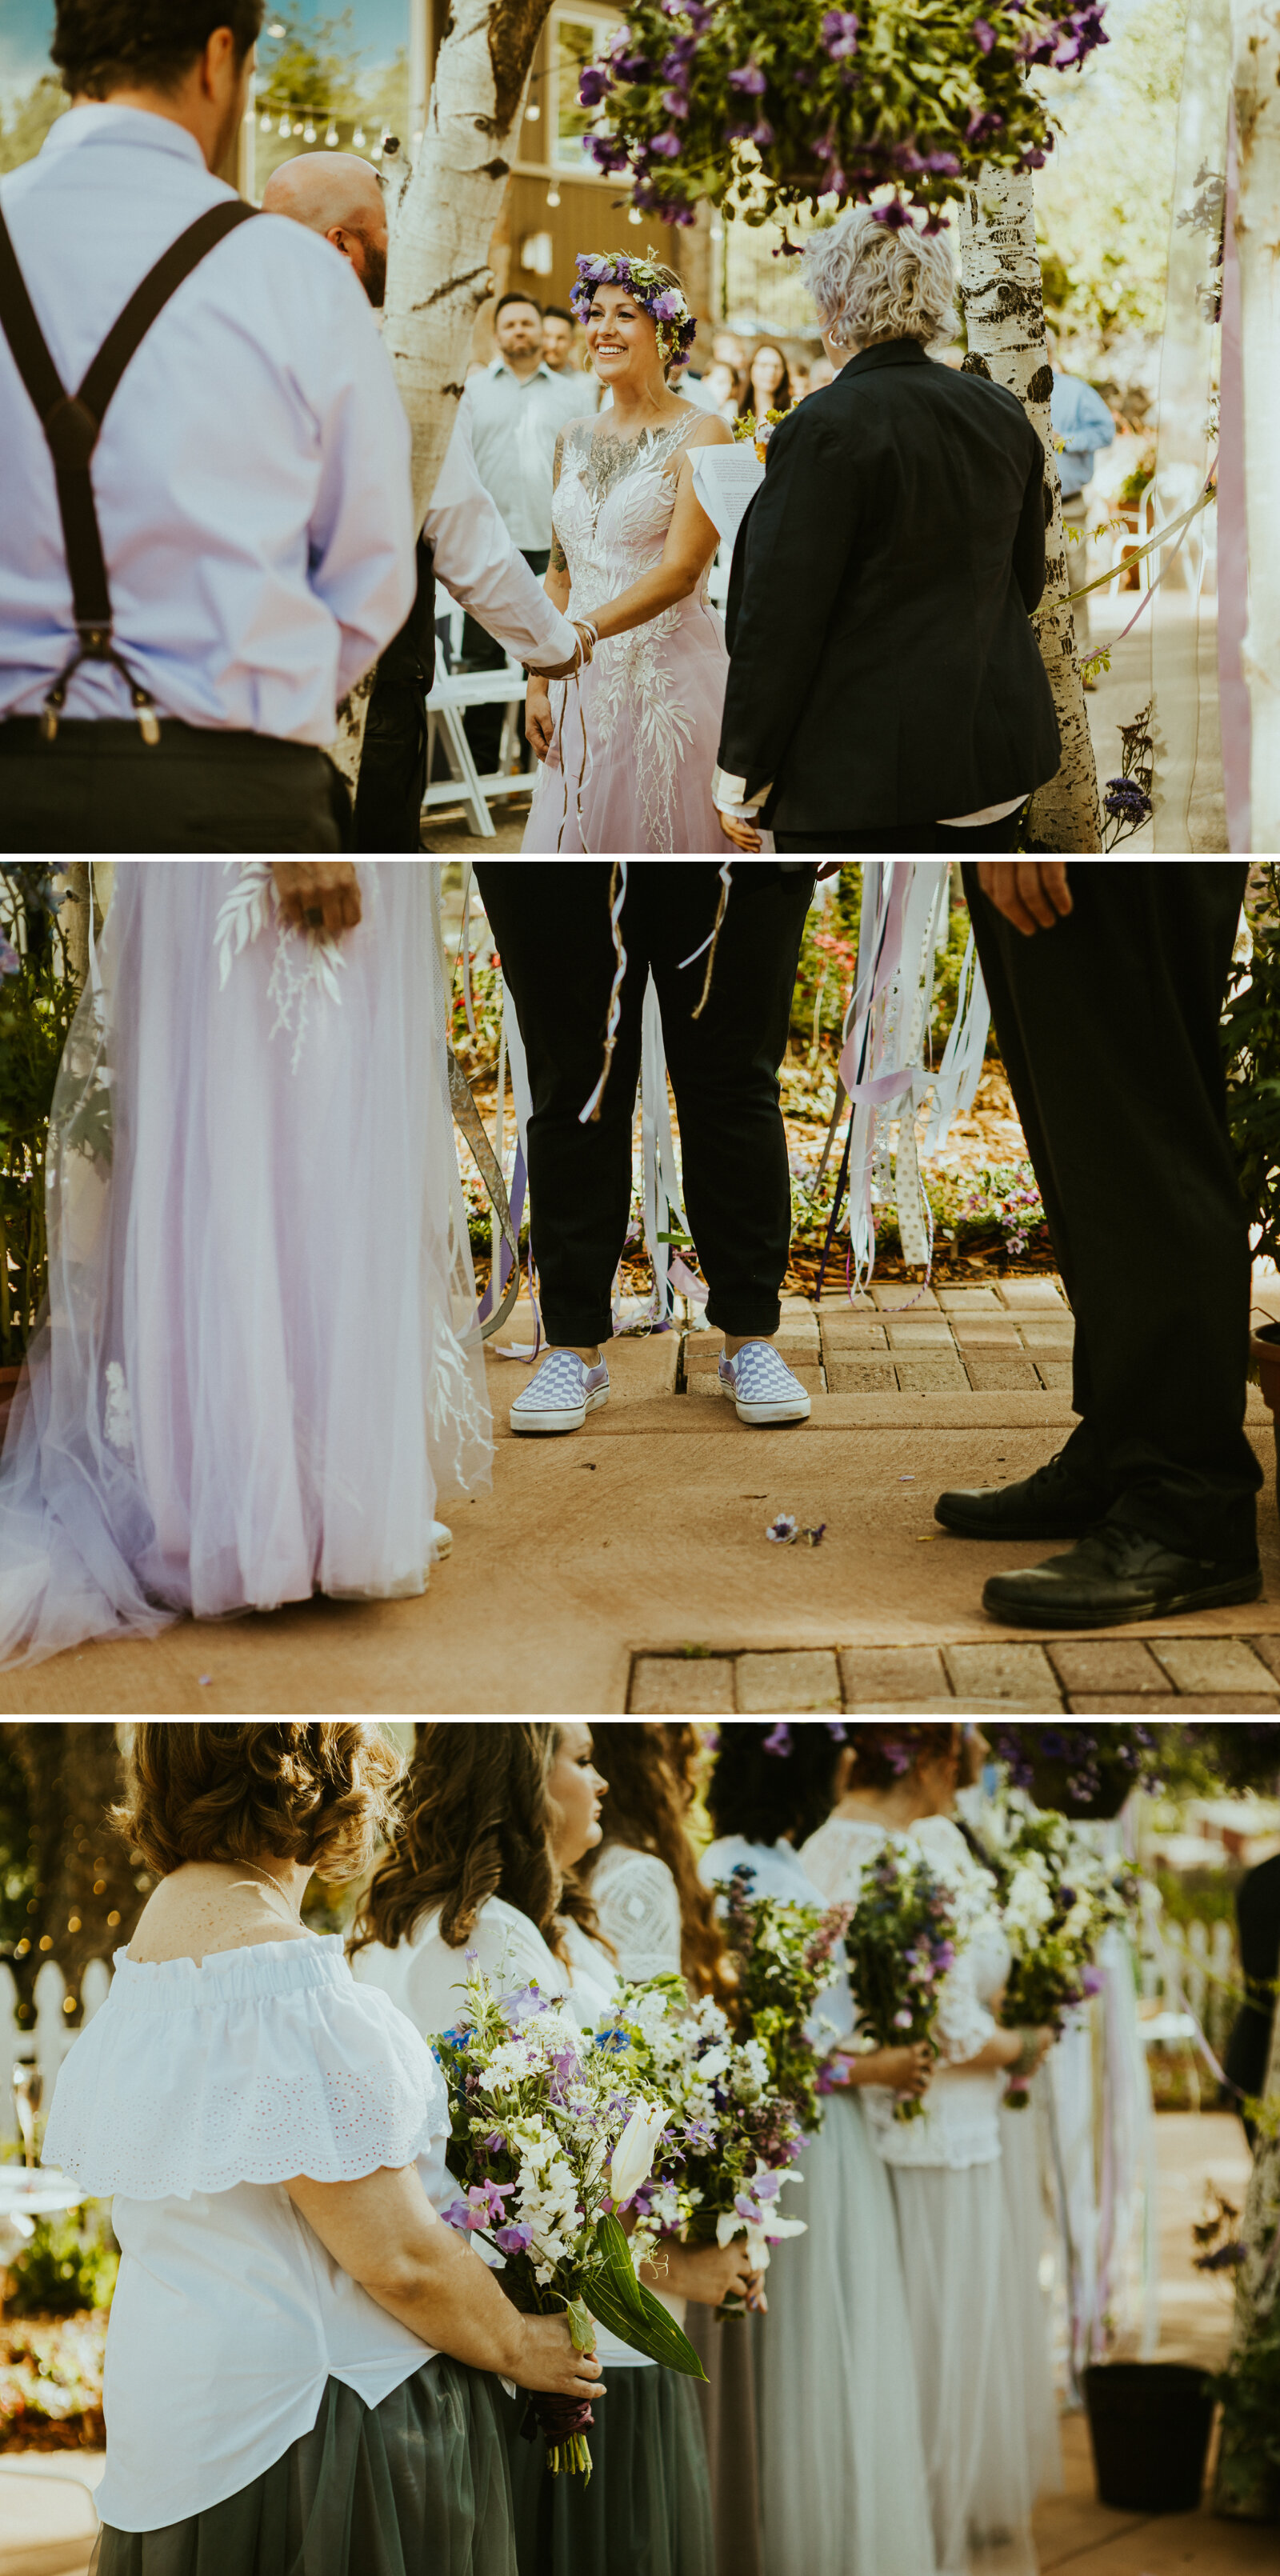 A wedding ceremony in flagstaff arizona at violas flower garden in june.jpg